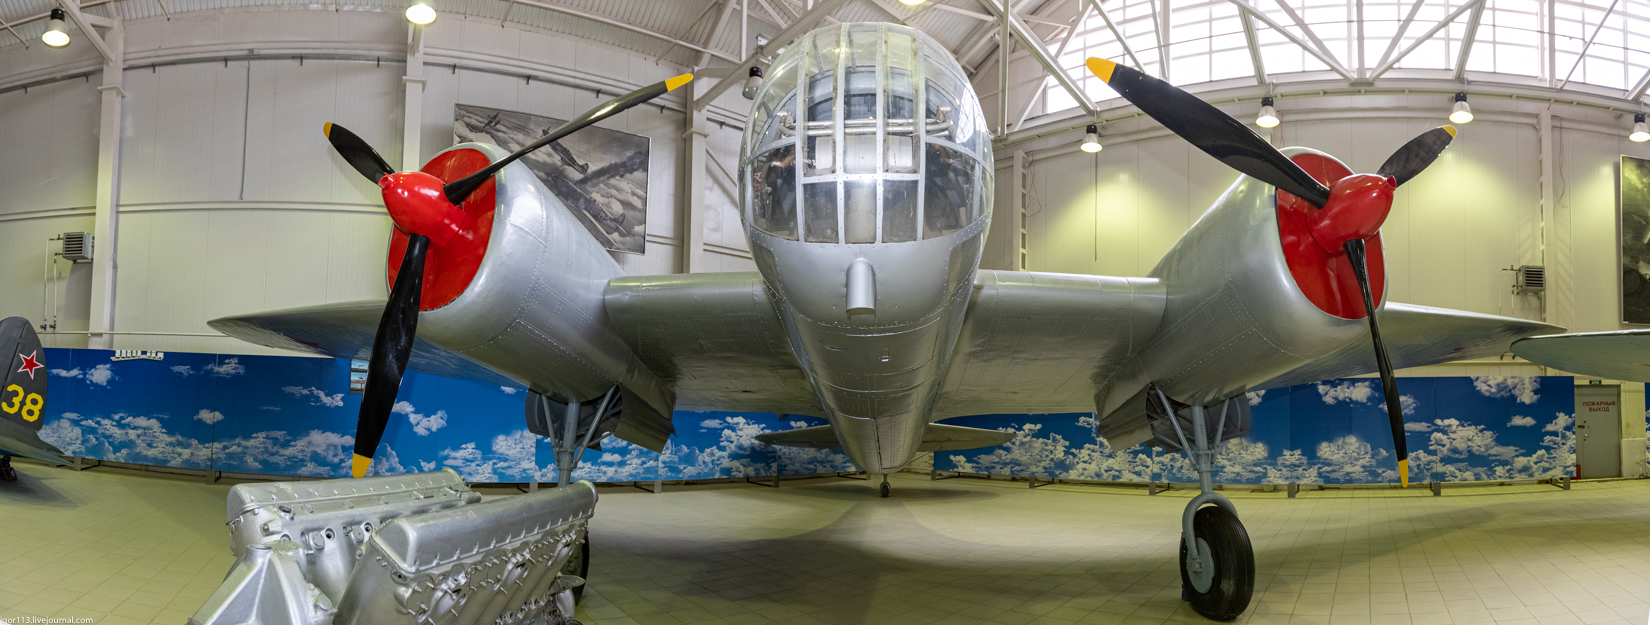 Музей ВВС Монино 030421 зал 2: скоростной фронтовой бомбардировщик СБ (АНТ-40) 